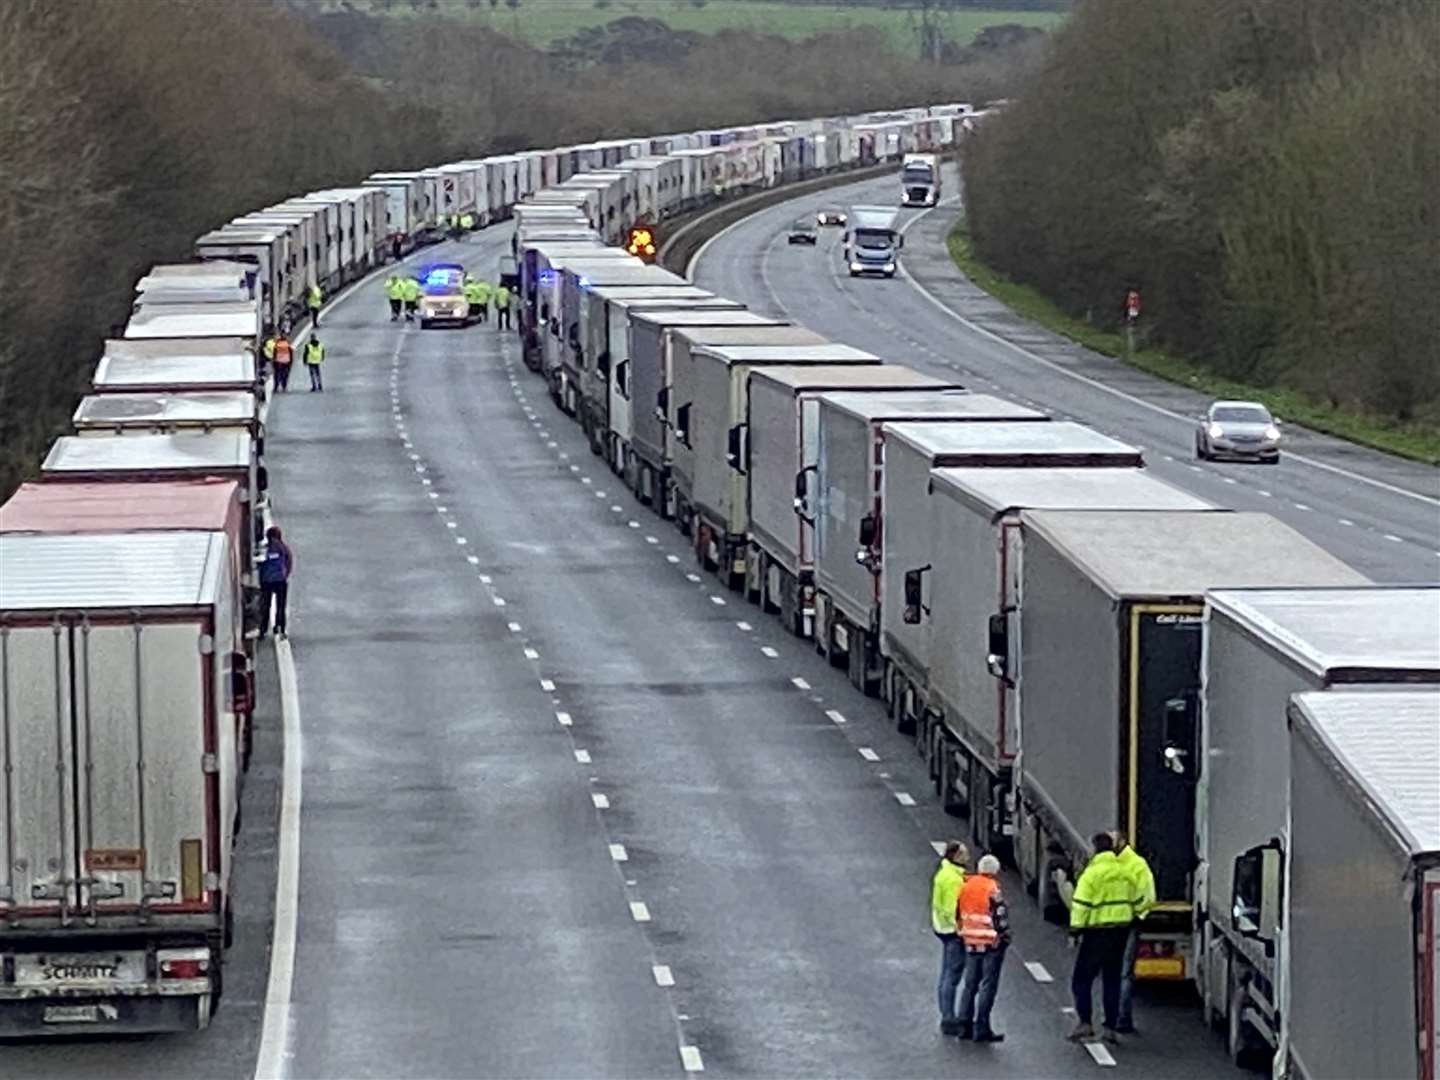 Lorries on M20 earlier this week